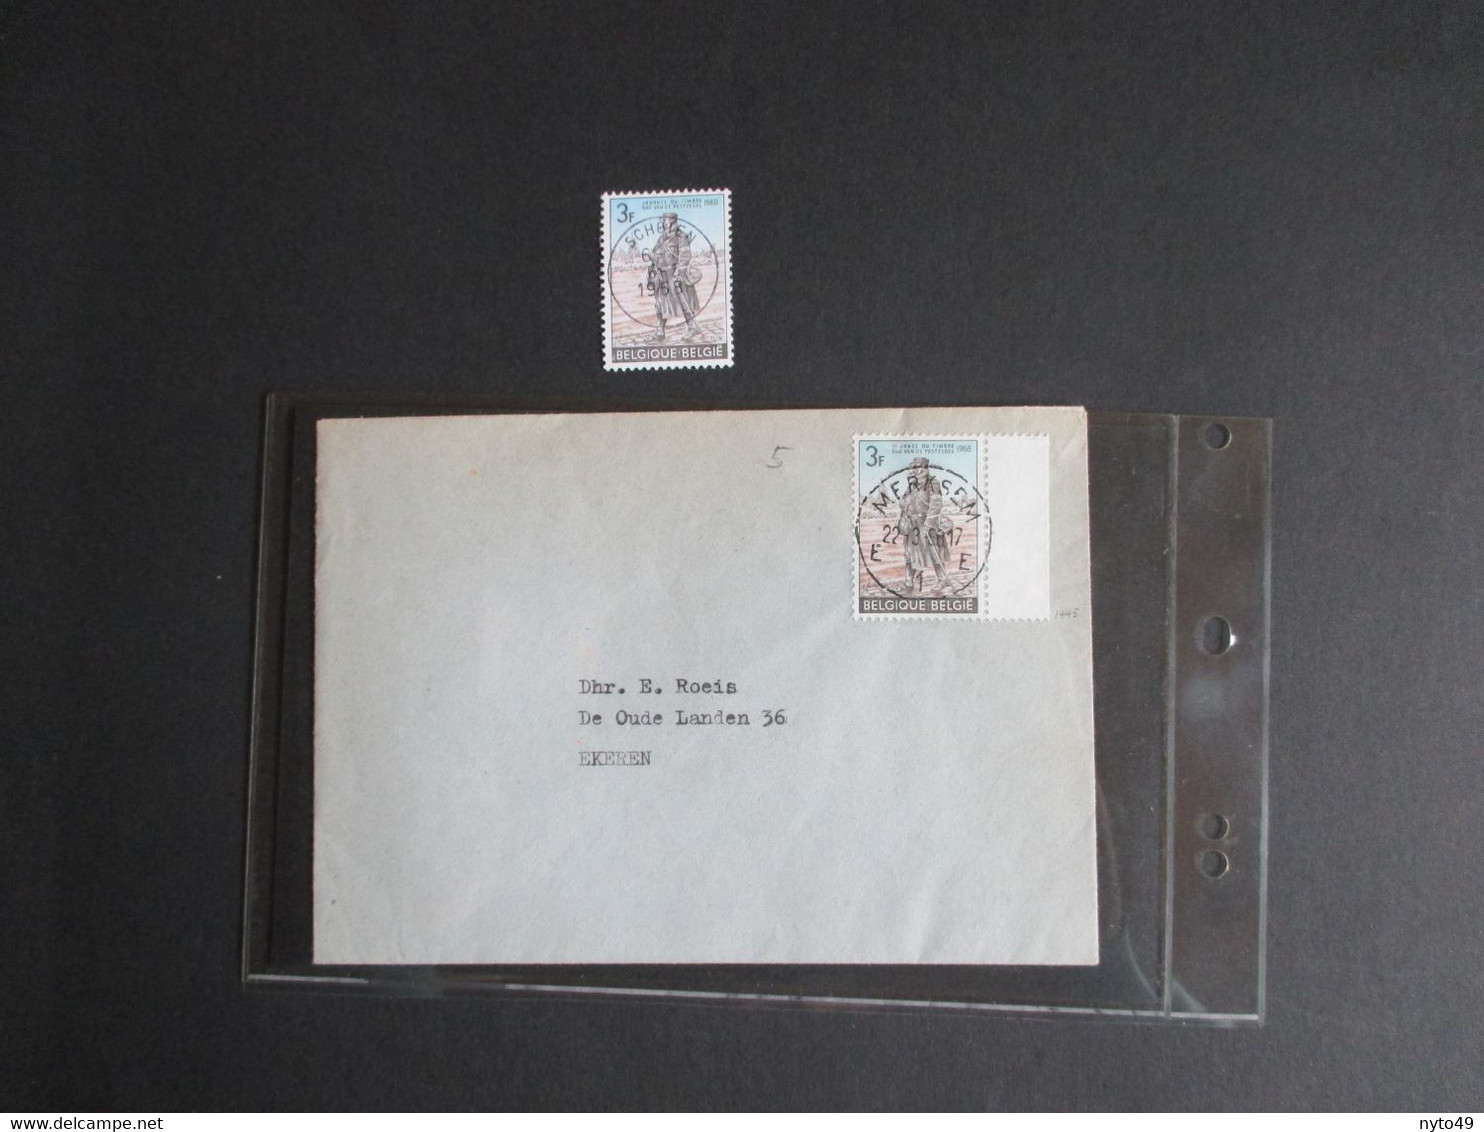 1445 - Dag Van De Postzegel - Alleen Op Brief Uit Merksem + Zegel Centrale Stempel Schoten - Lettres & Documents